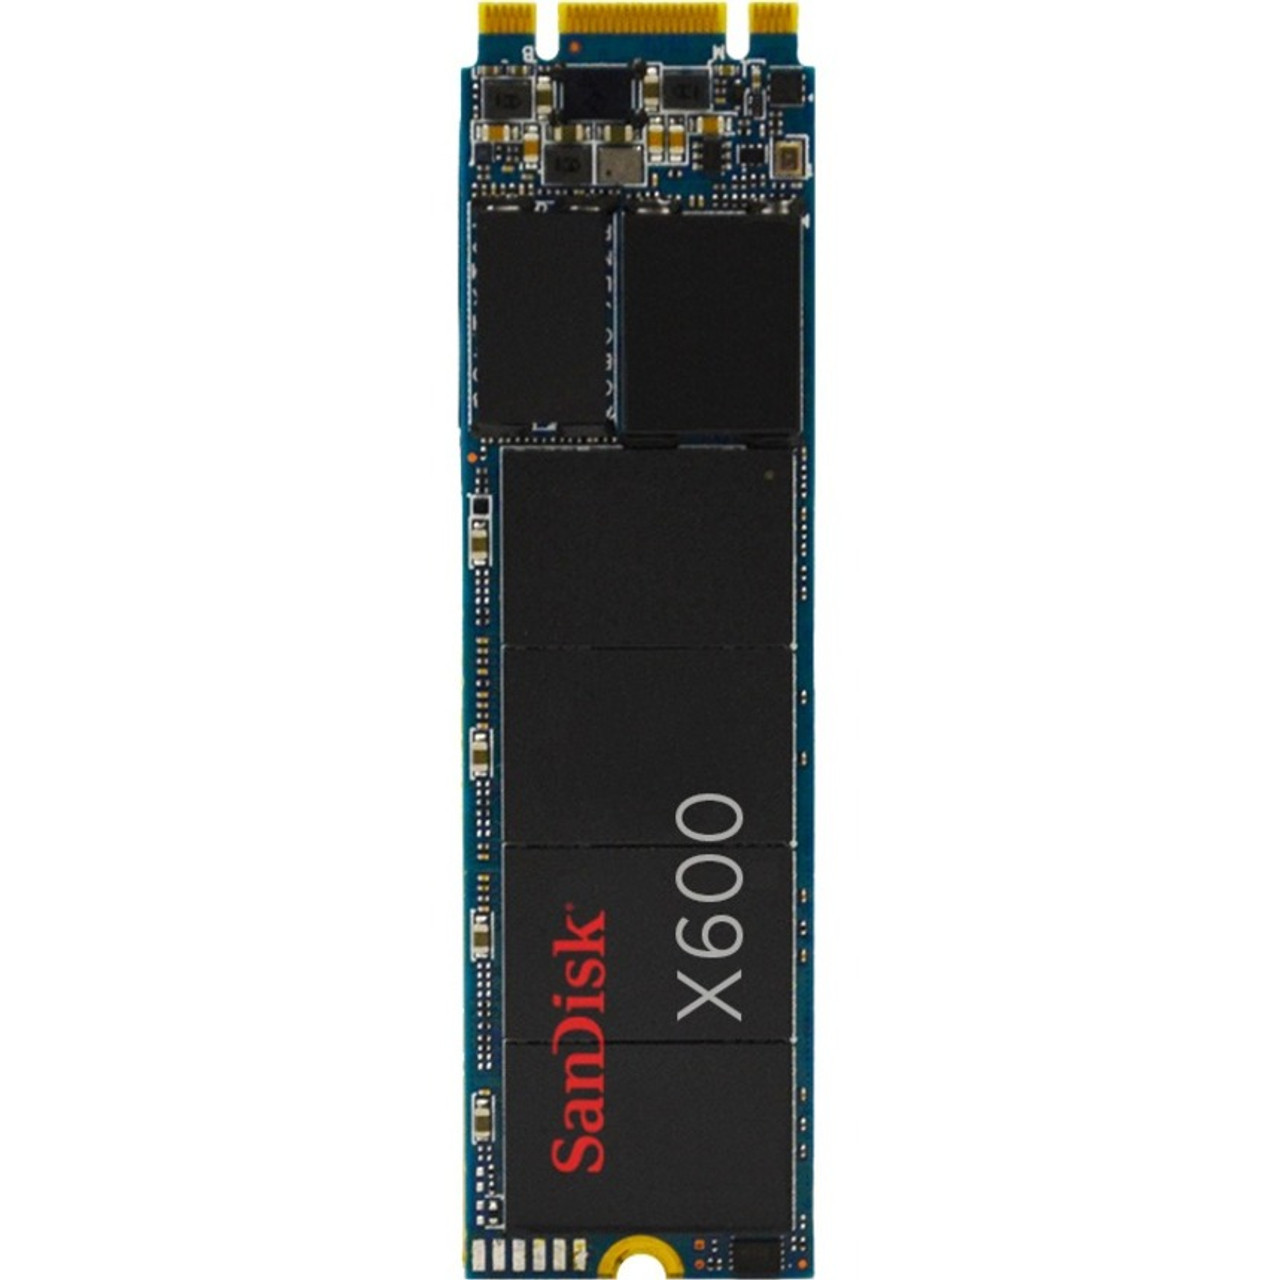 SanDisk X600 512 GB Solid State Drive - M.2 2280 Internal - SATA (SATA/600)